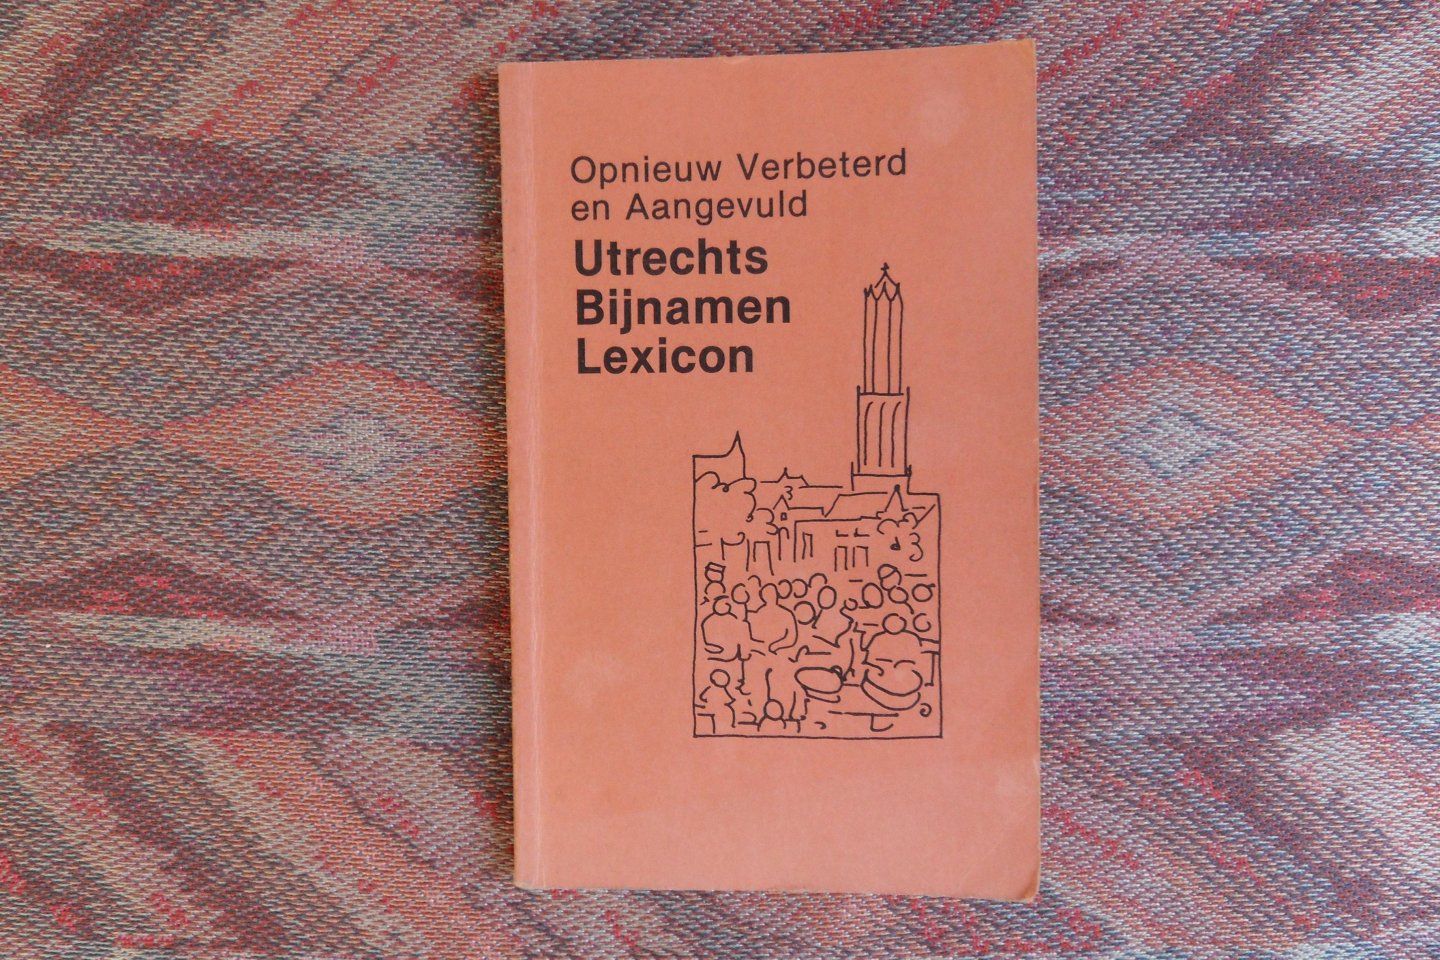 "De Utrechtsche". ( productie en copyright ). - Opnieuw verbeterd en aangevuld Utrechts Bijnamen Lexicon.